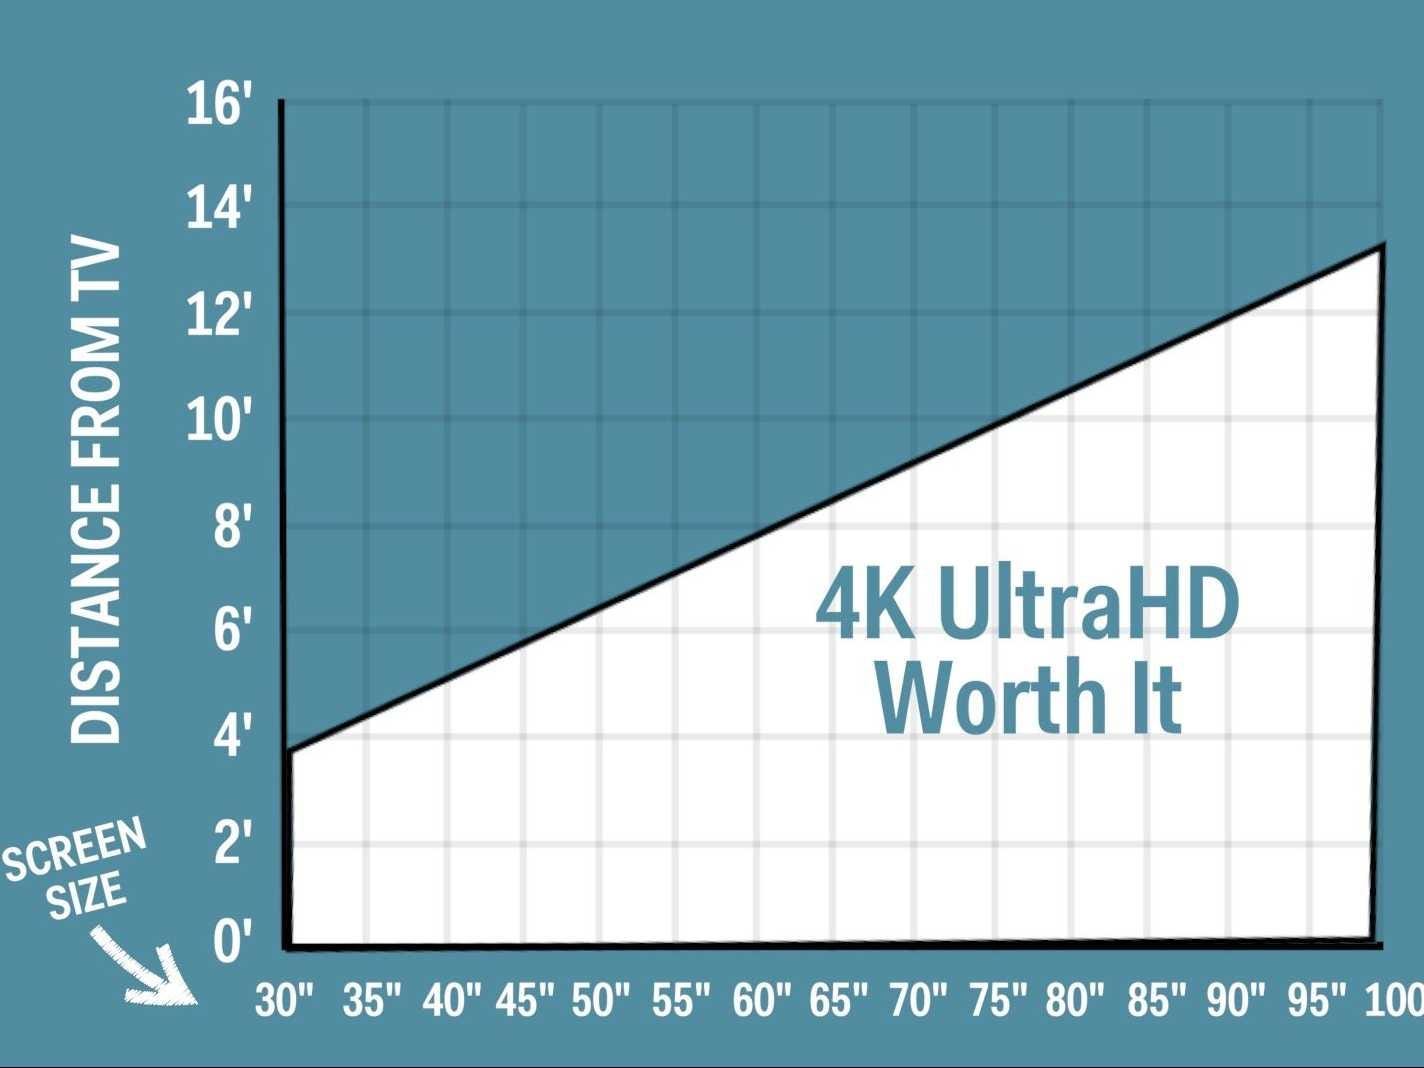 Eine Grafik, die die Bildschirmgröße und den Abstand zum Fernseher vergleicht, um zu beurteilen, ob sich 4K lohnt.